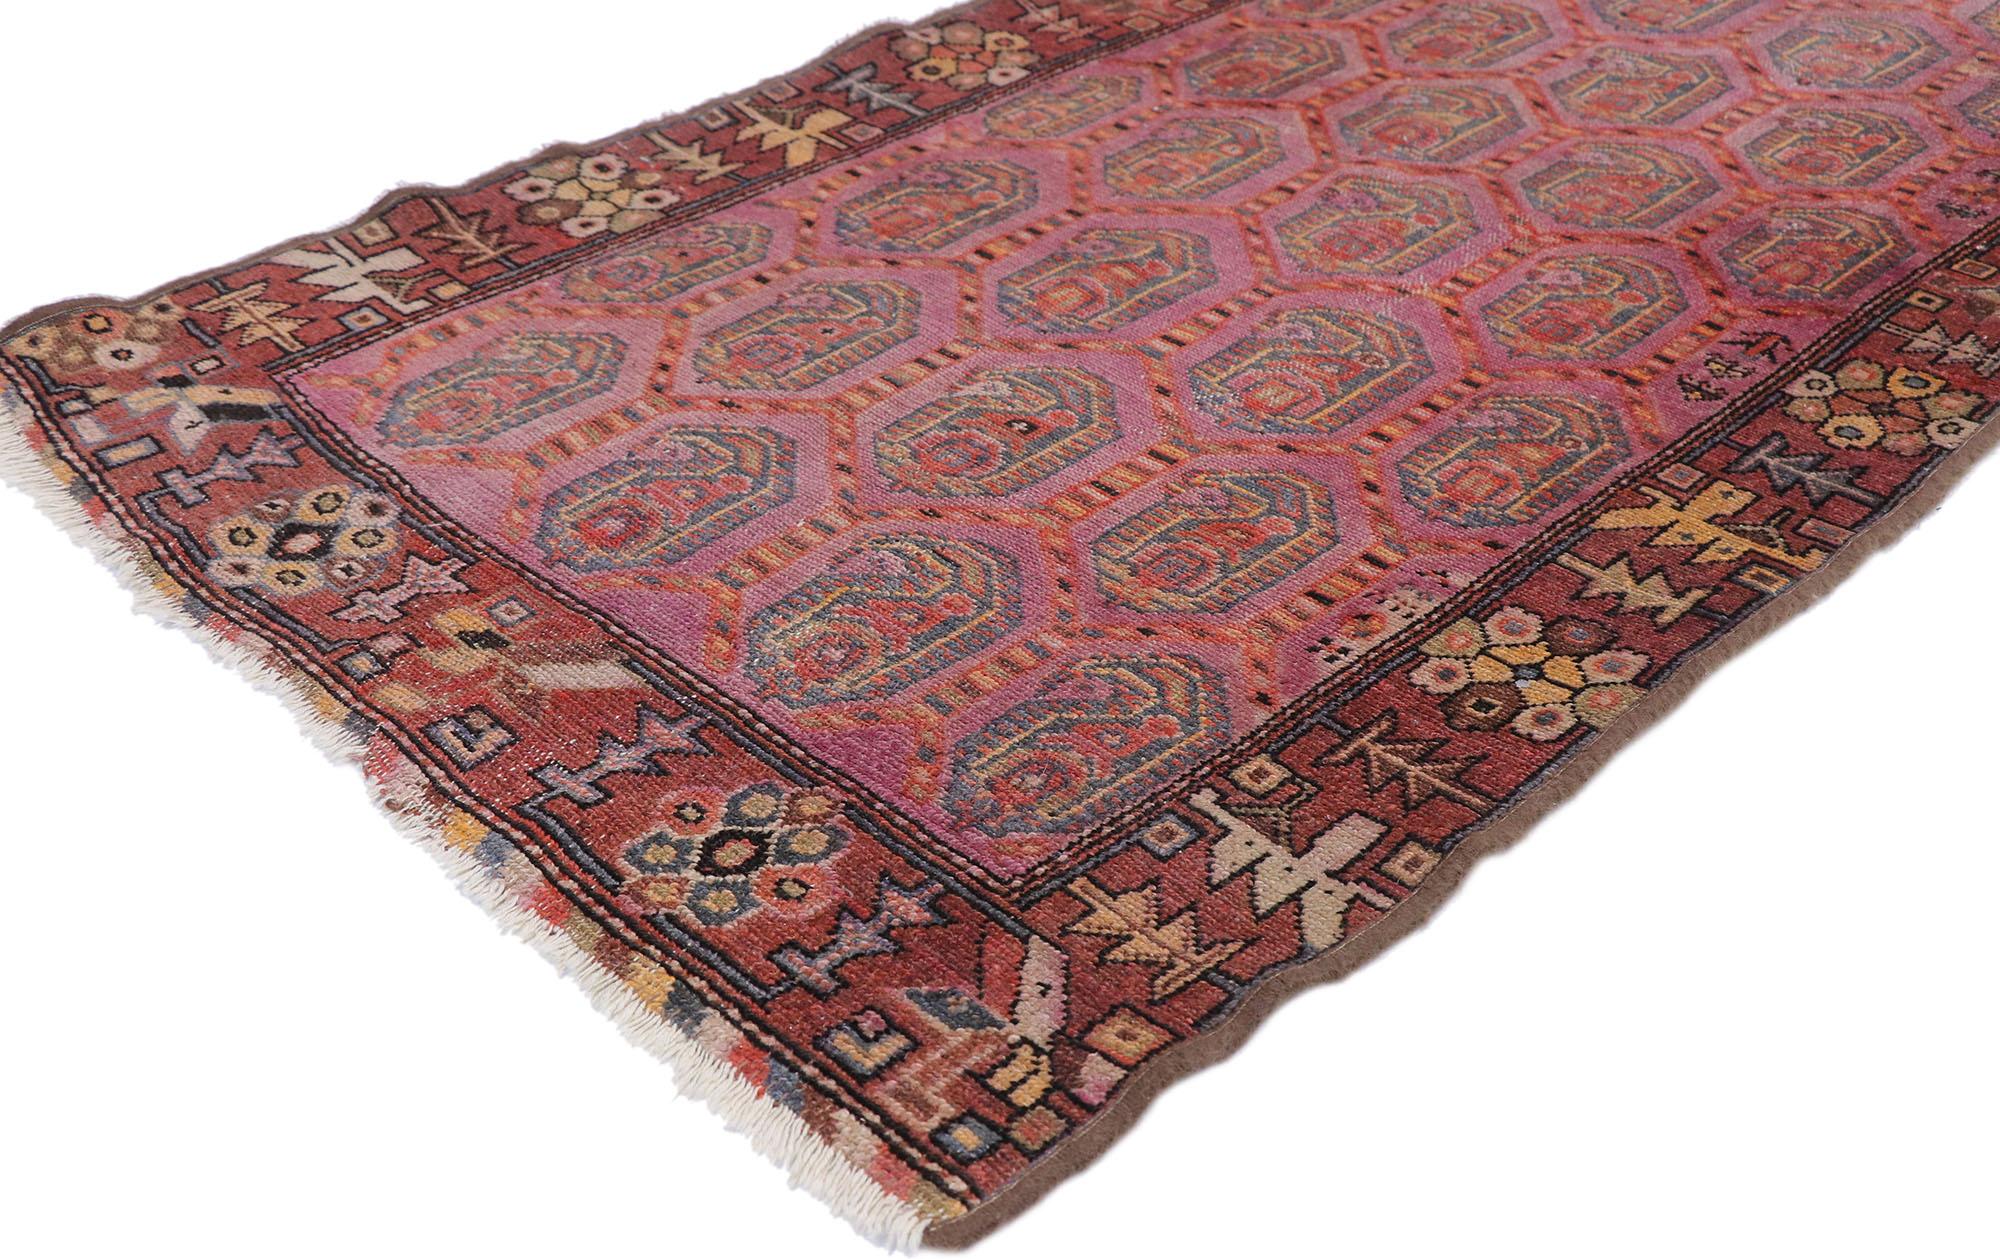 77635, ancien tapis persan Malayer de style rustique tribal bohémien. Rempli de détails minuscules et d'un design expressif audacieux combiné à des couleurs exubérantes et à un style bohème, ce tapis ancien en laine persane Malayer noué à la main